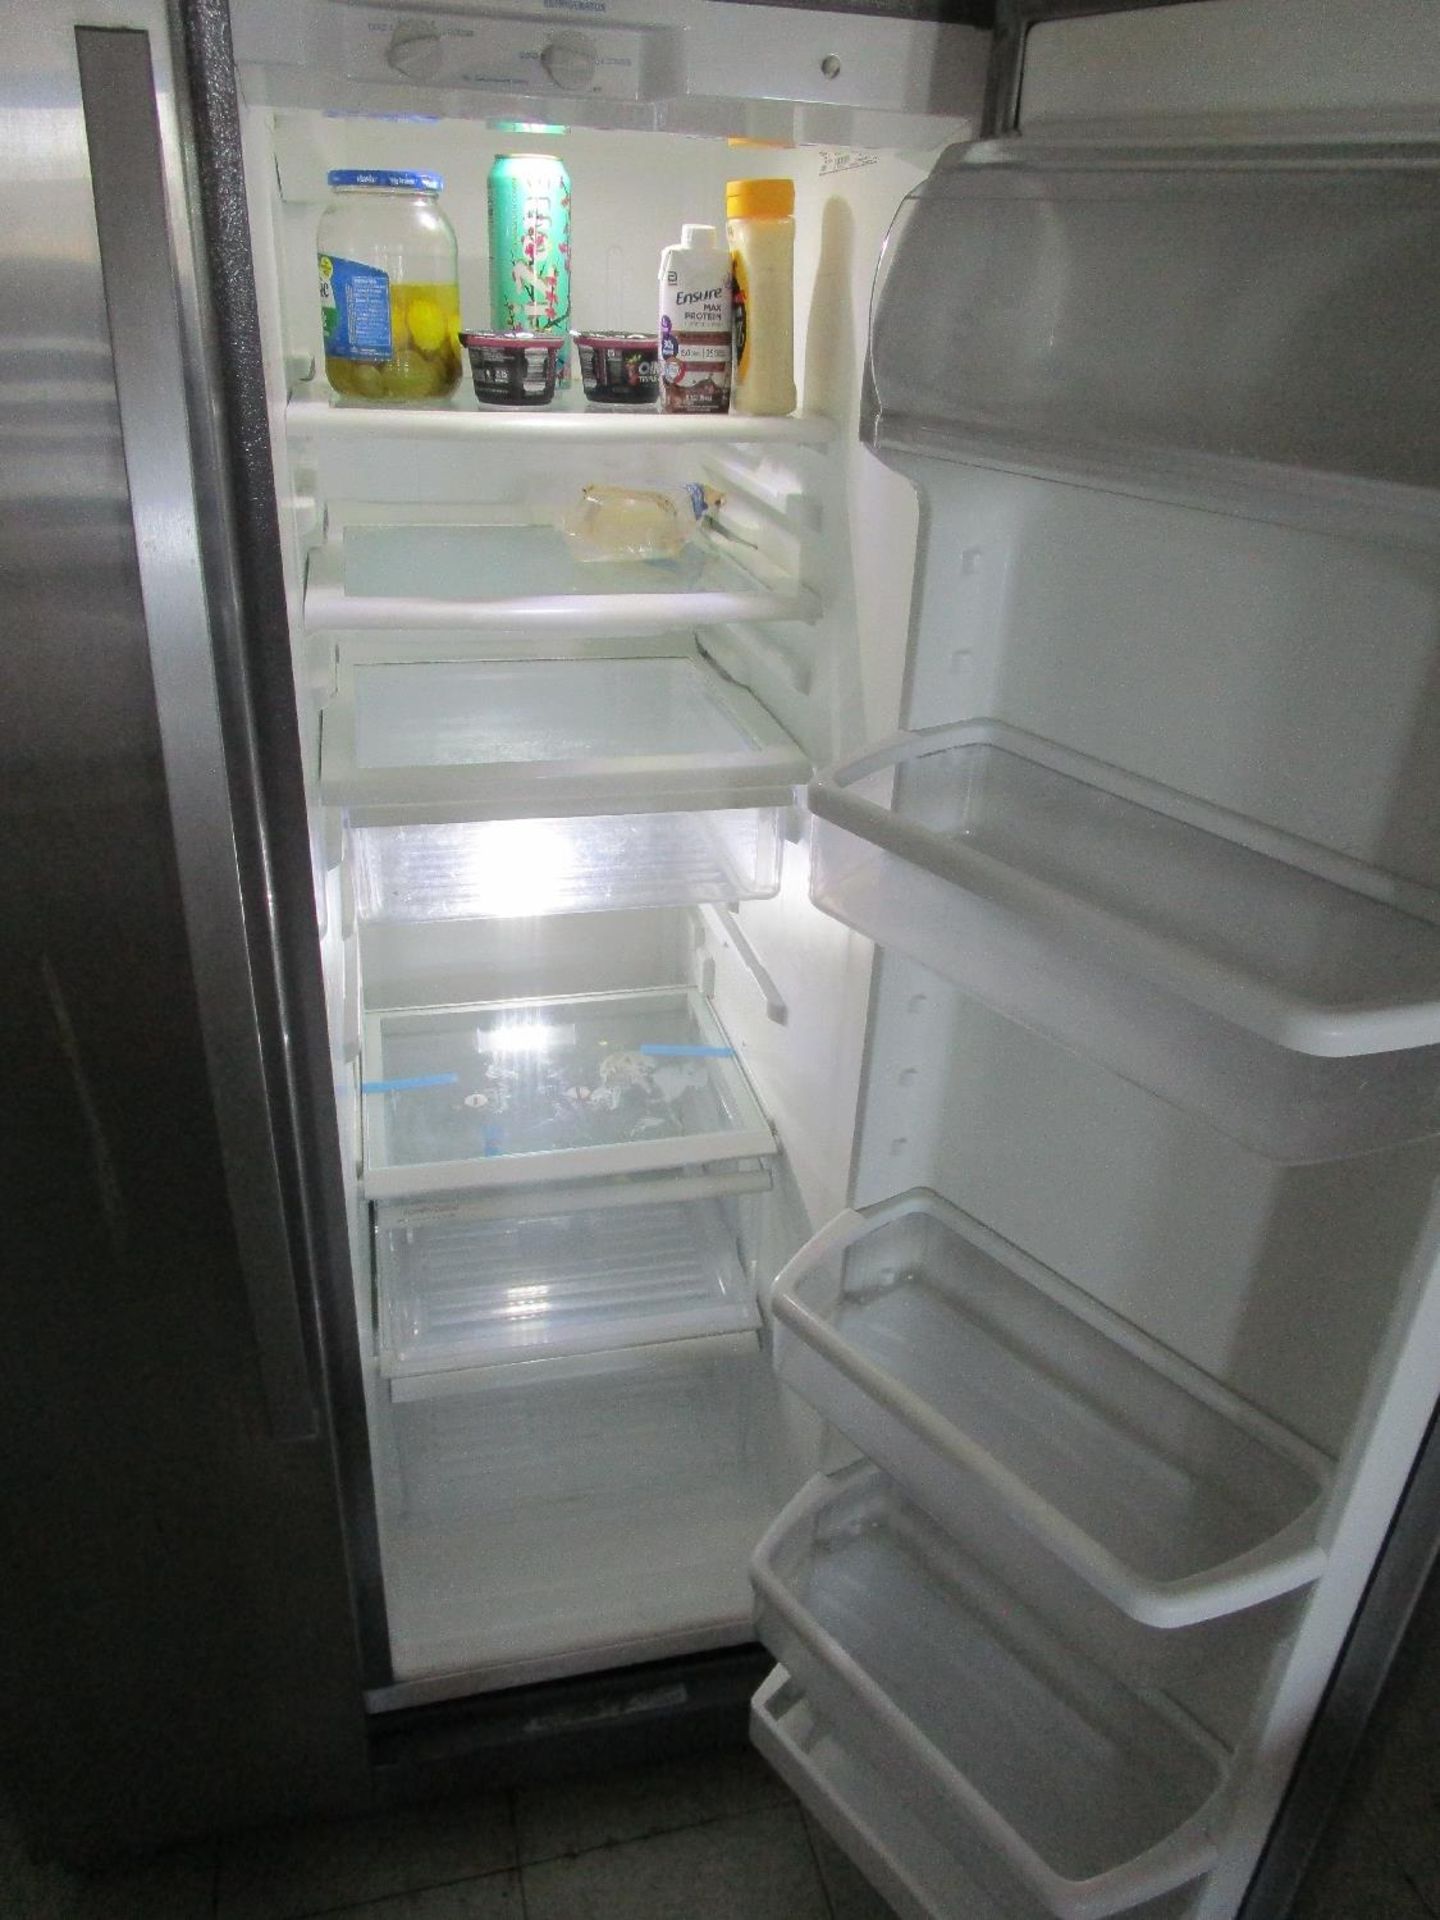 Whirlpool Refrigerator/Freezer - Image 2 of 3